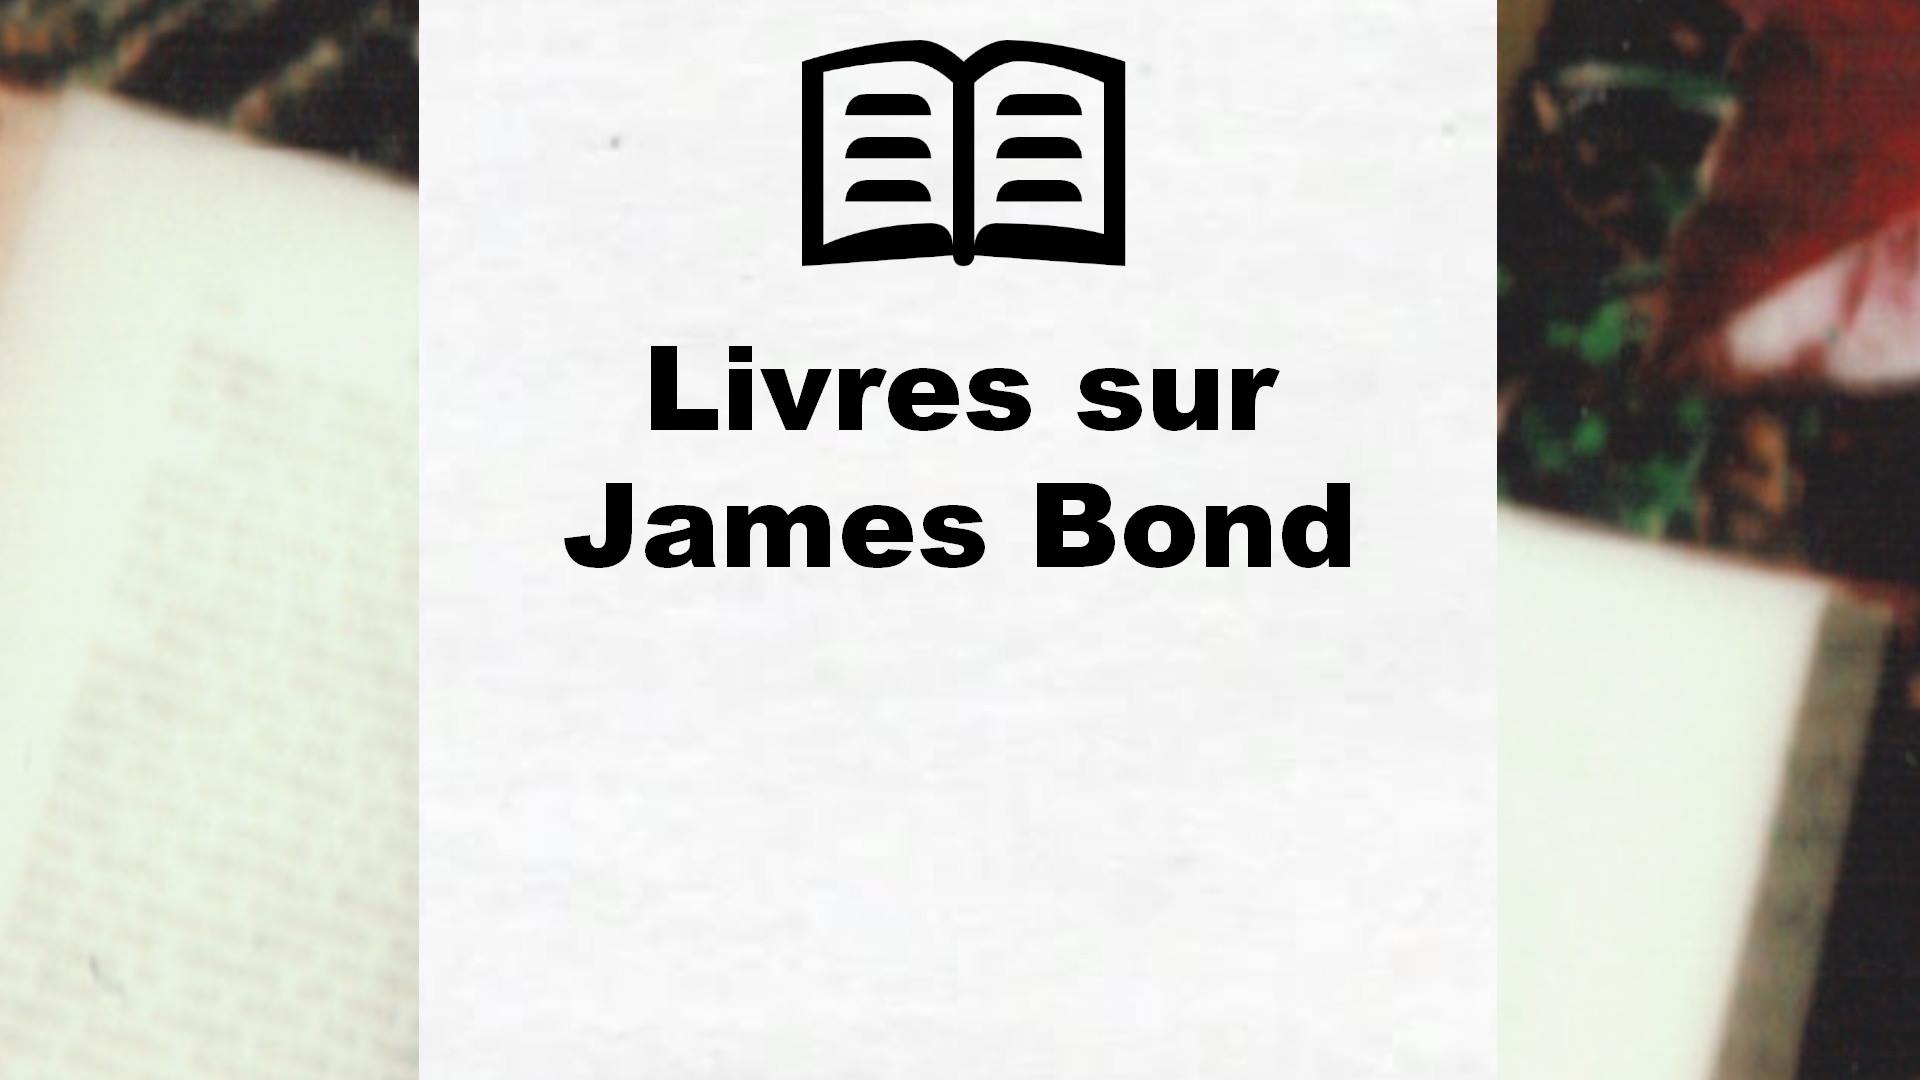 Livres sur James Bond